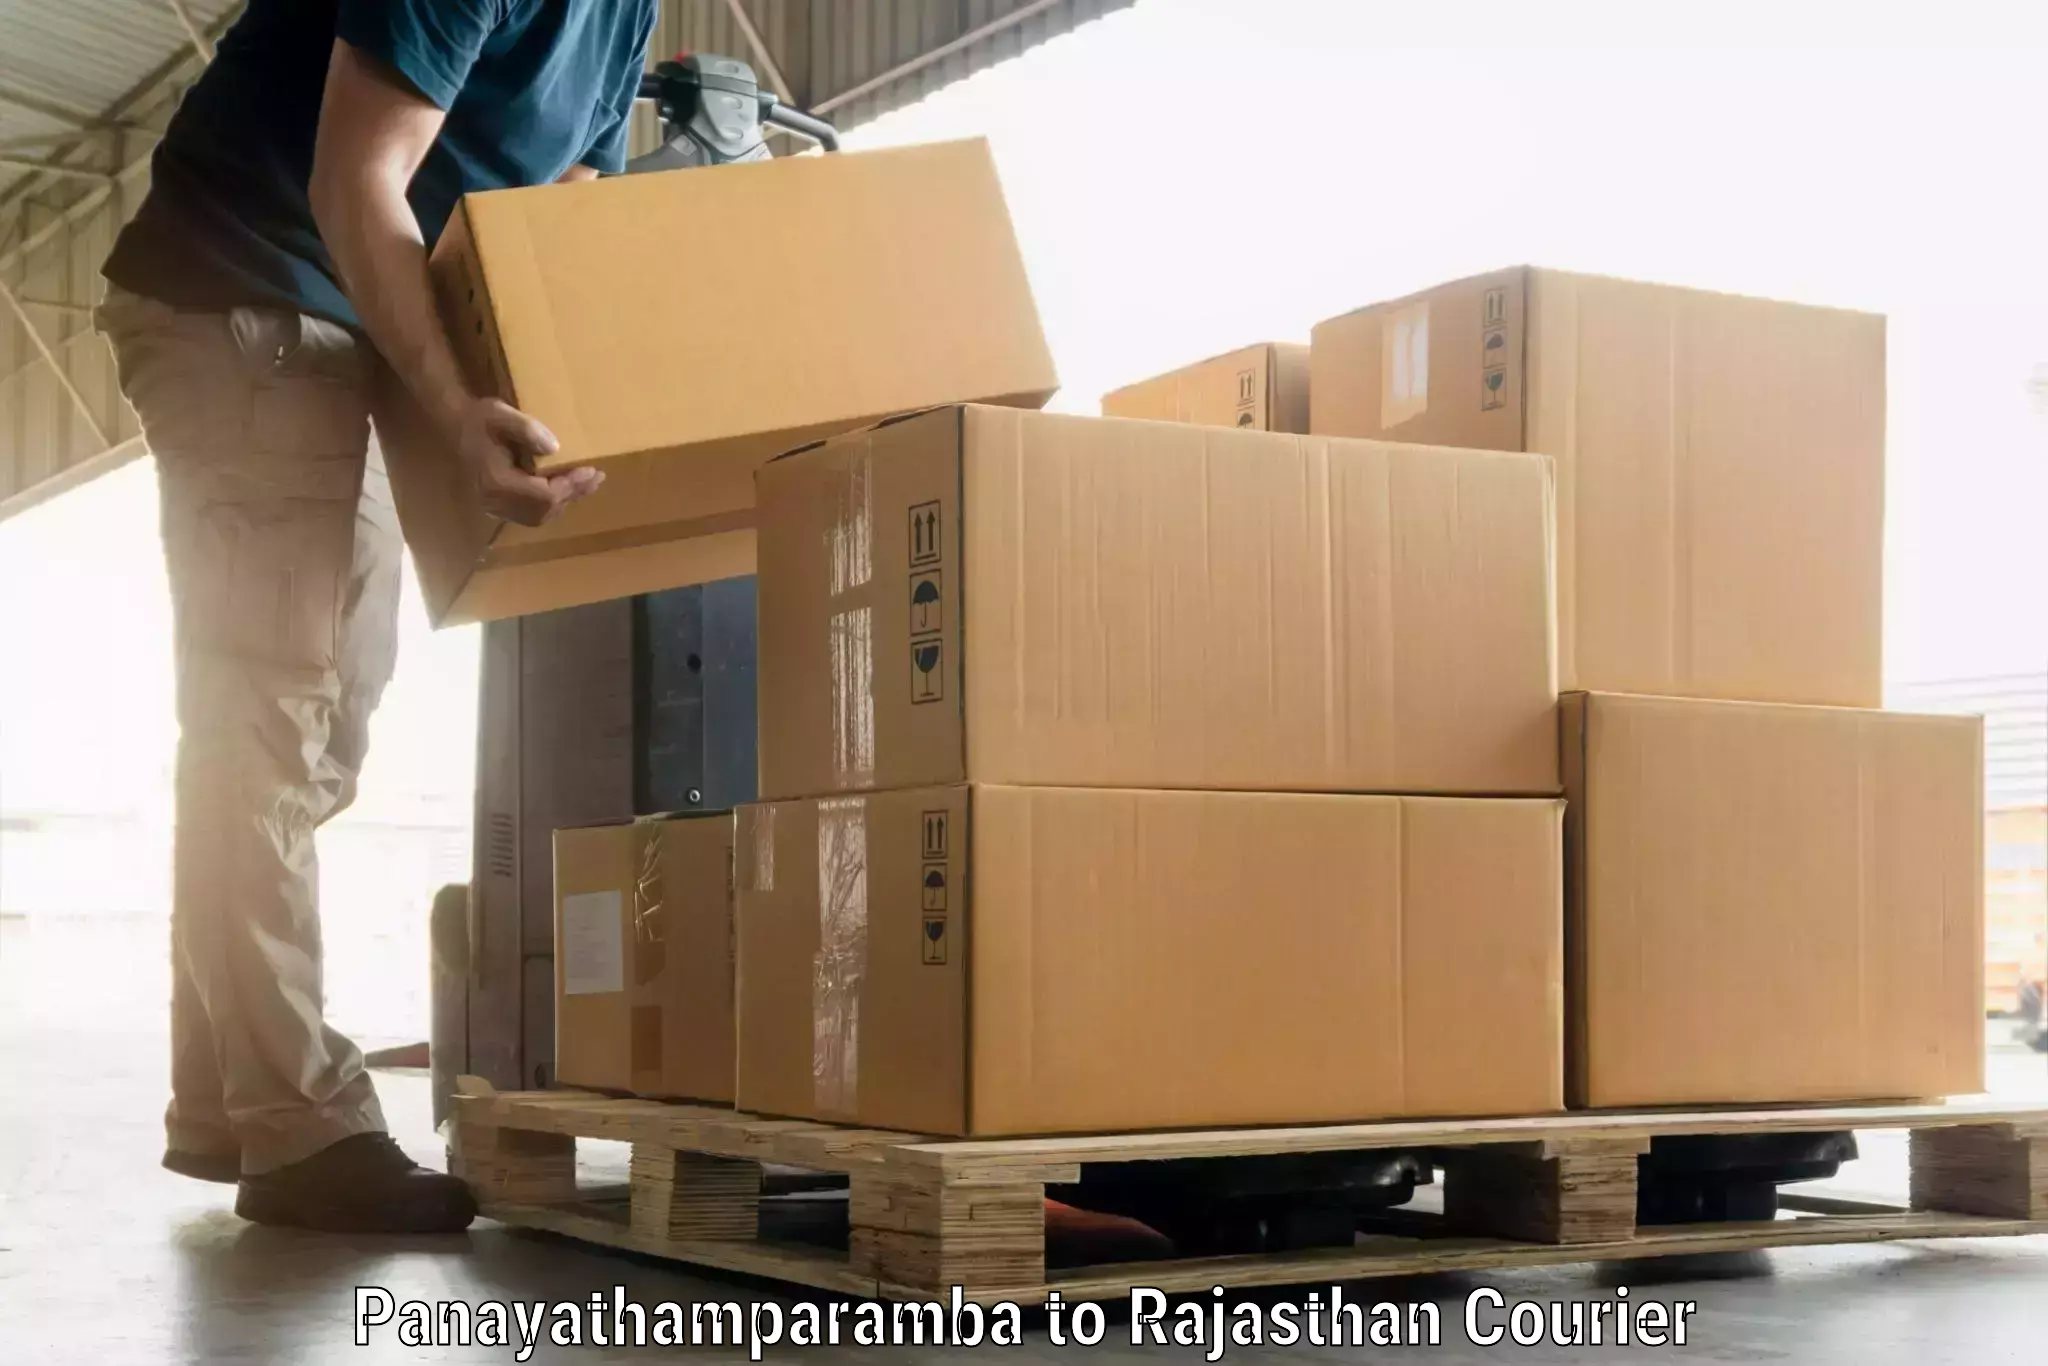 Luggage transport service Panayathamparamba to Lohawat